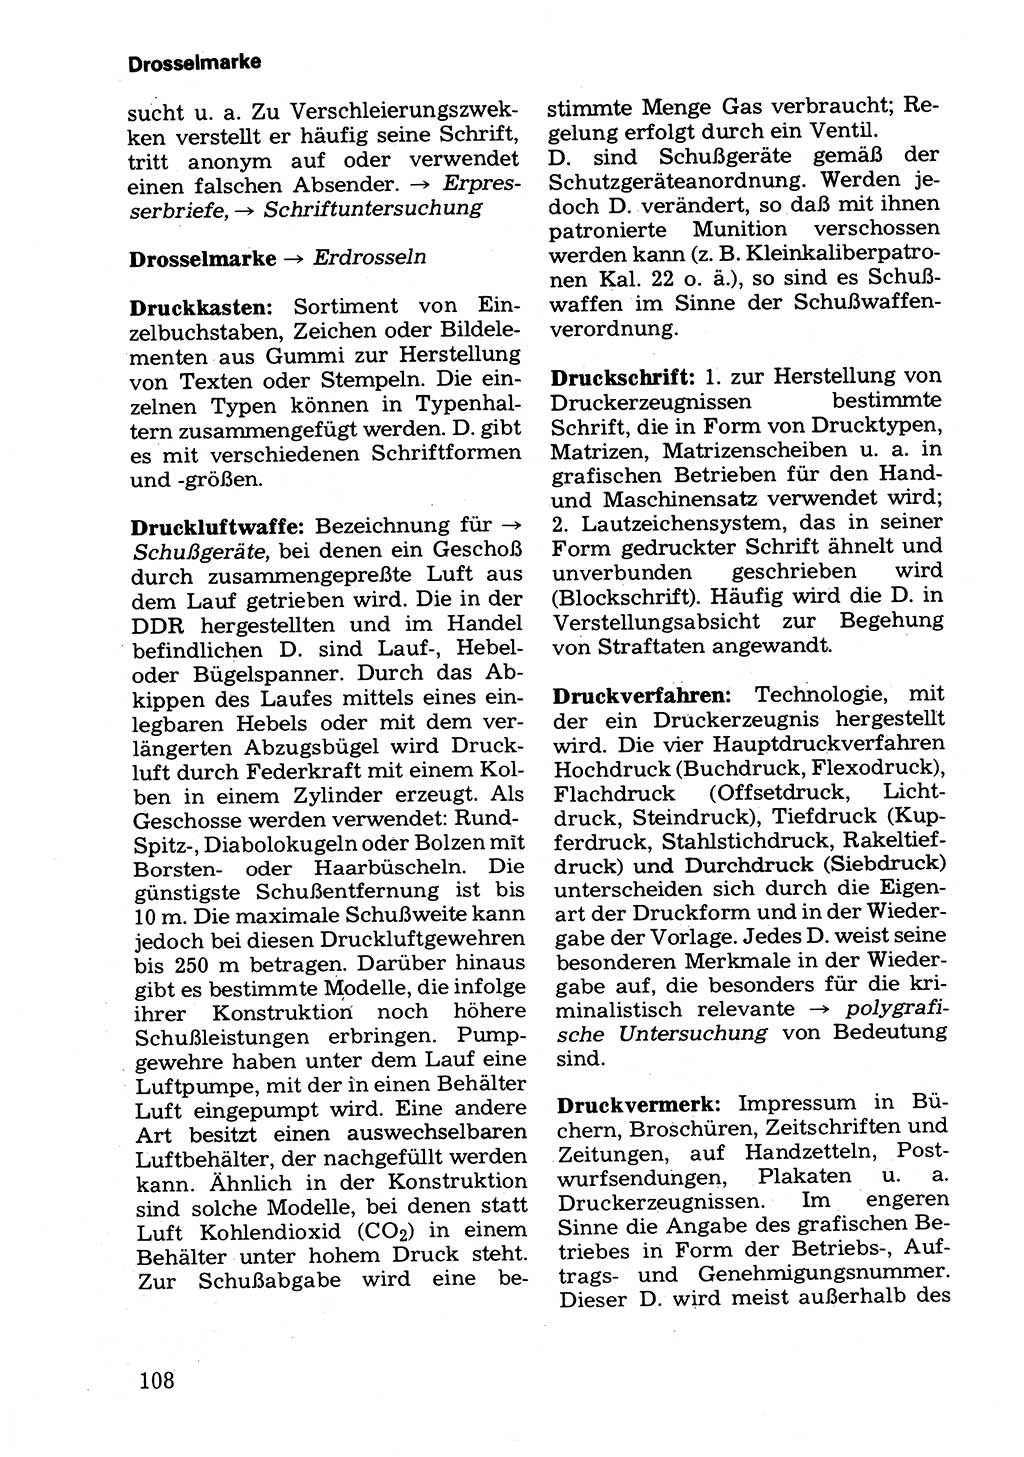 Wörterbuch der sozialistischen Kriminalistik [Deutsche Demokratische Republik (DDR)] 1981, Seite 108 (Wb. soz. Krim. DDR 1981, S. 108)